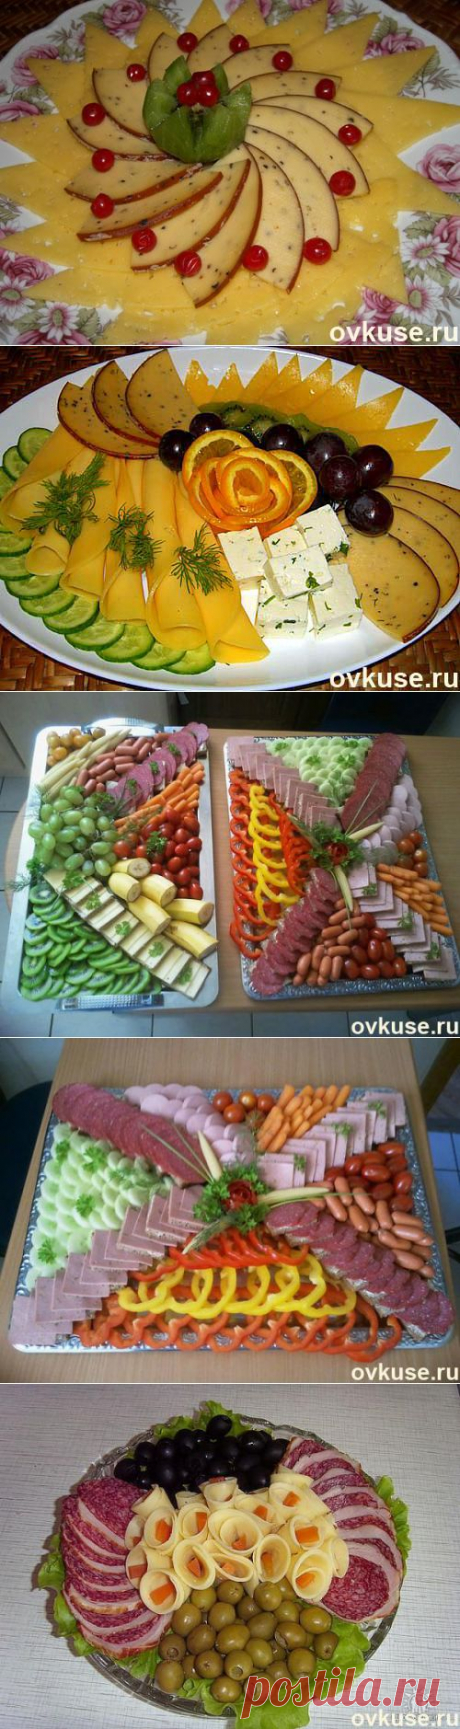 Нарезка на праздничный стол ( мясная, сырная ) - Простые рецепты Овкусе.ру